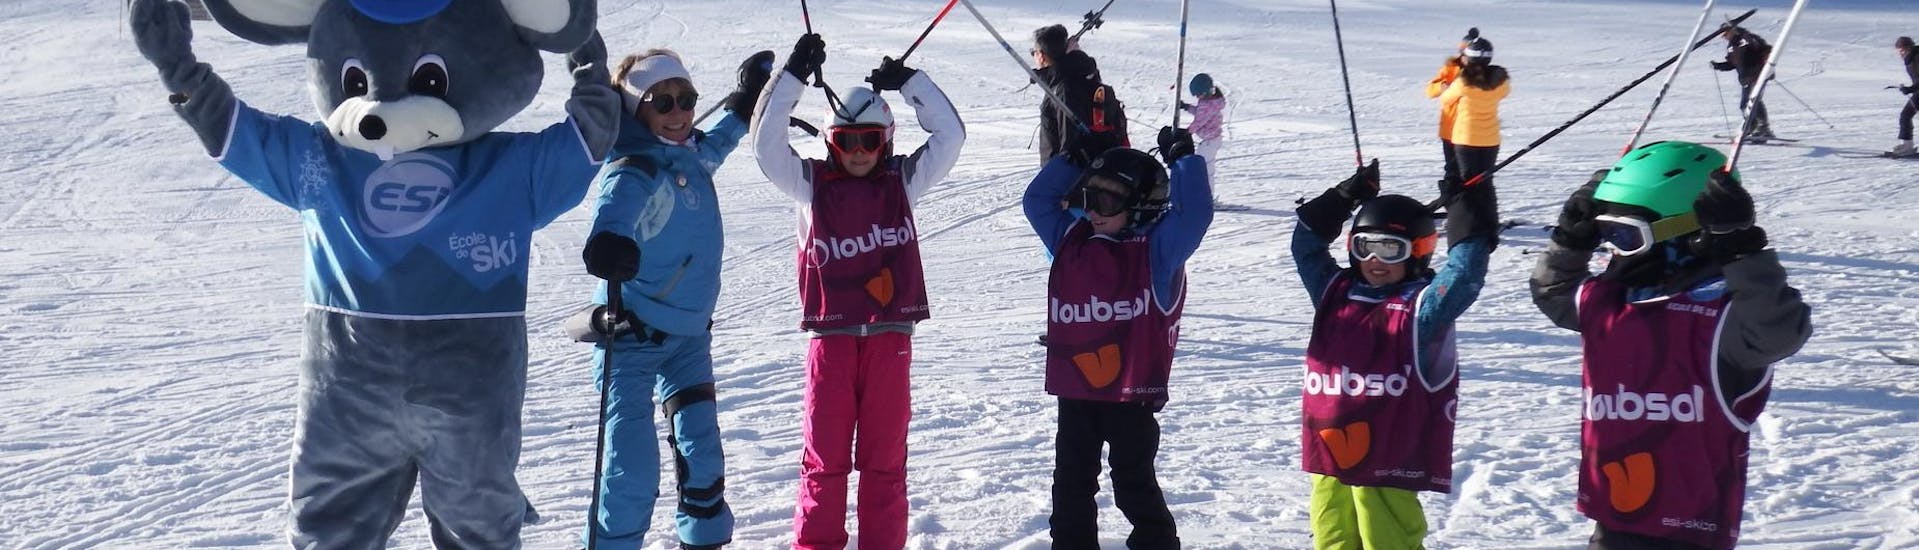 Cours de ski Enfants (5-12 ans) - Après-midi - Vacances.